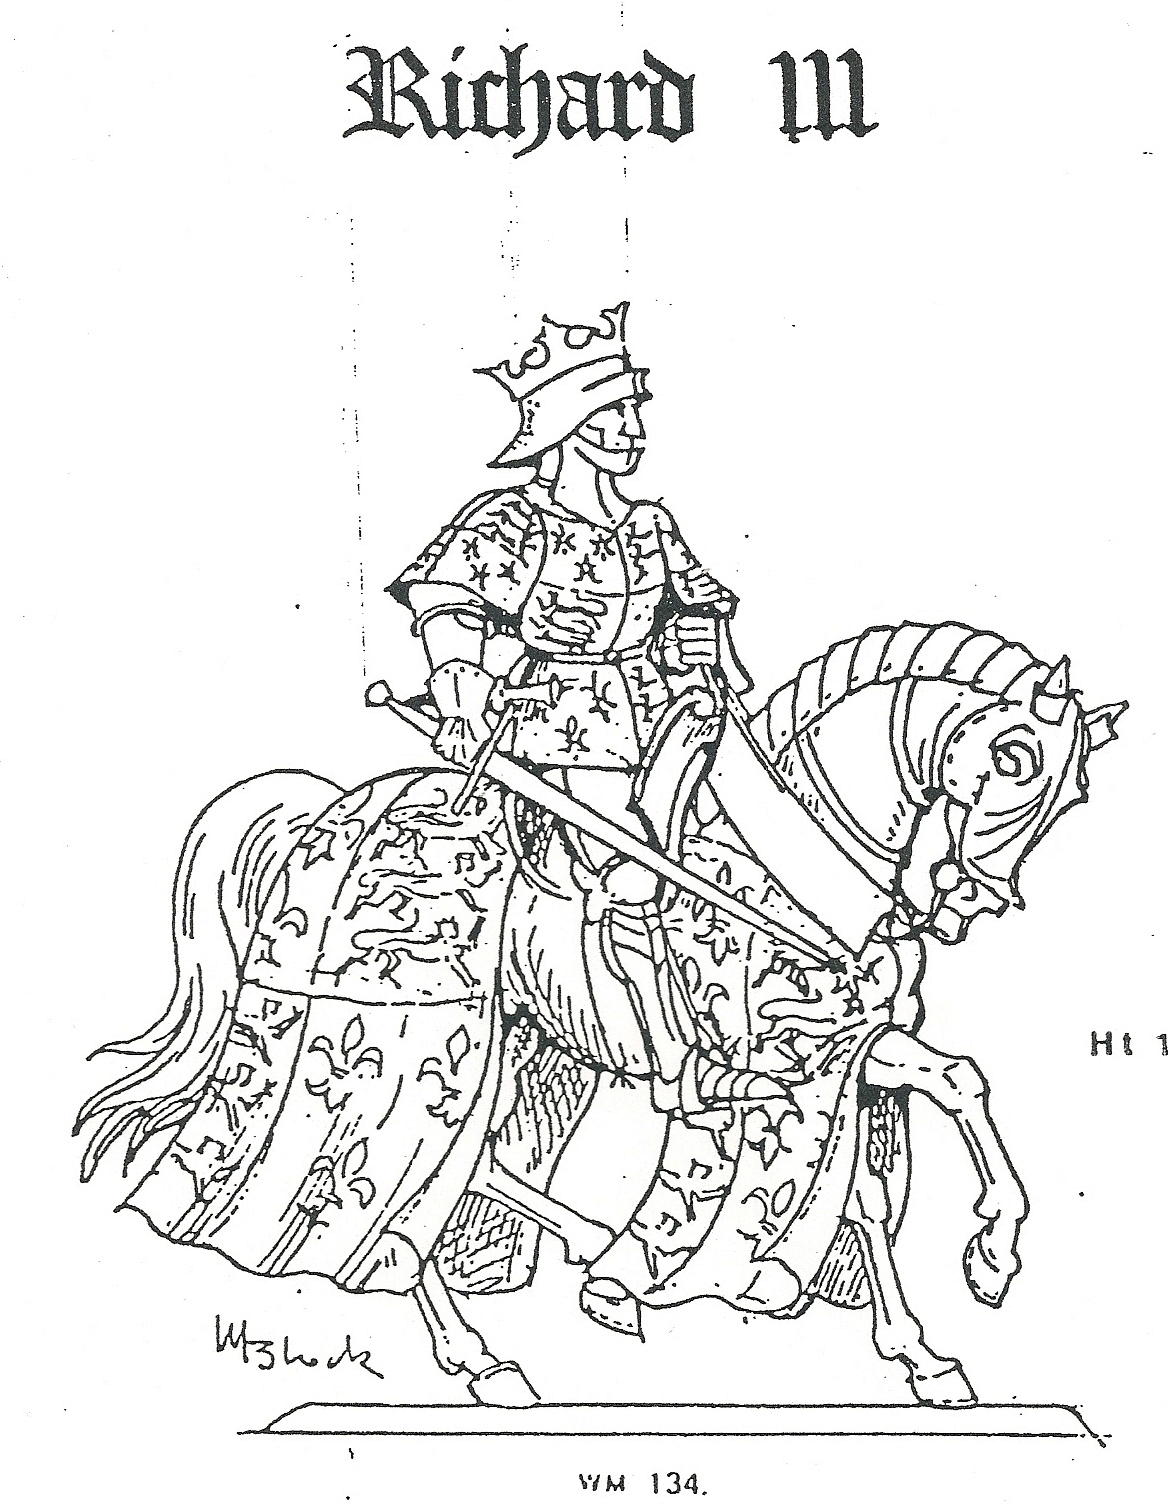 VA01 Richard III